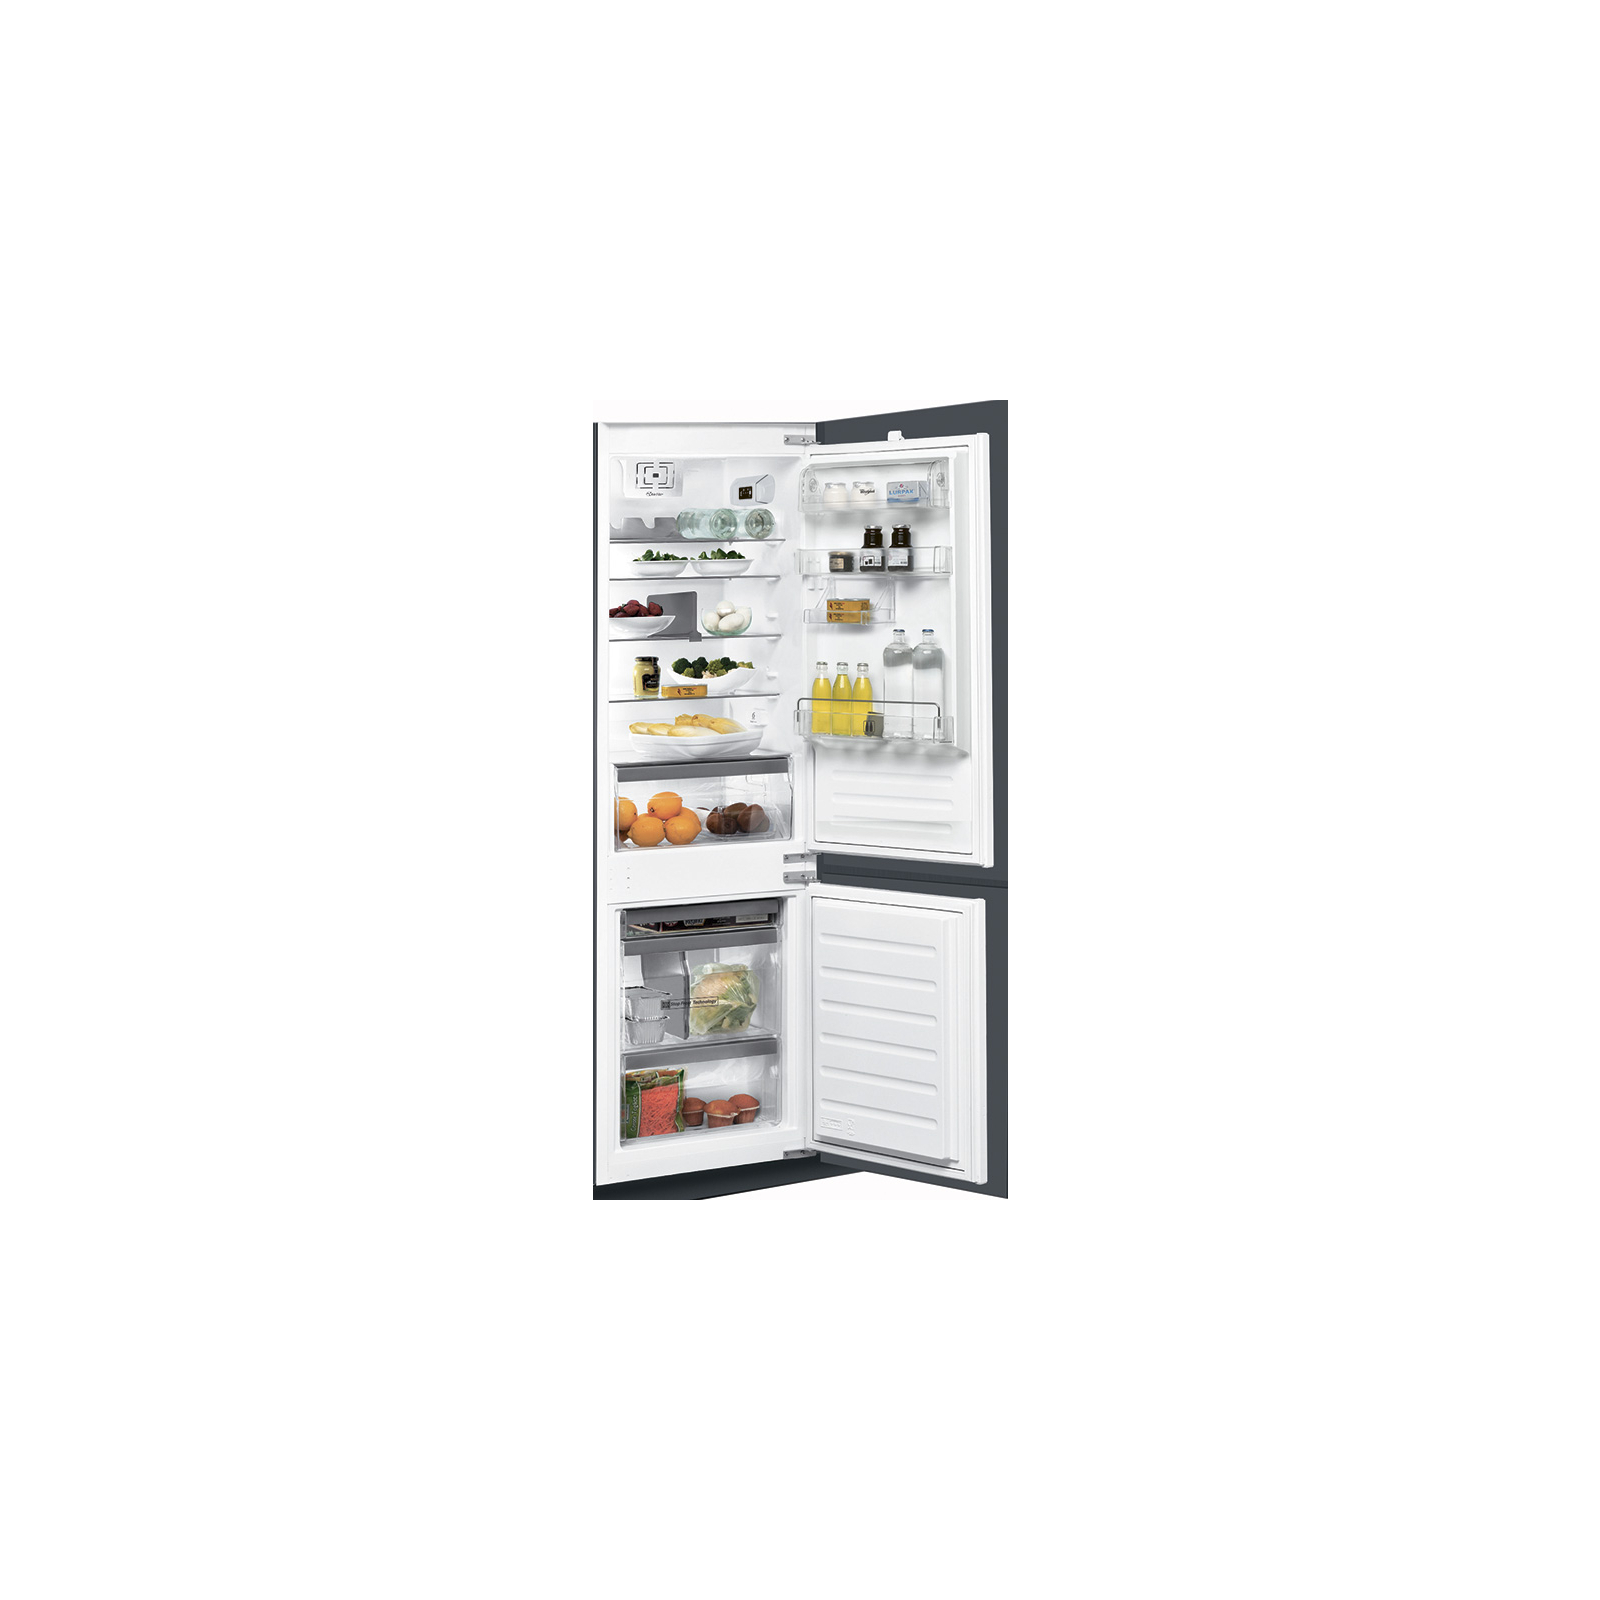 Холодильник Whirlpool ART 6711/A++ SF (ART6711/A++SF)